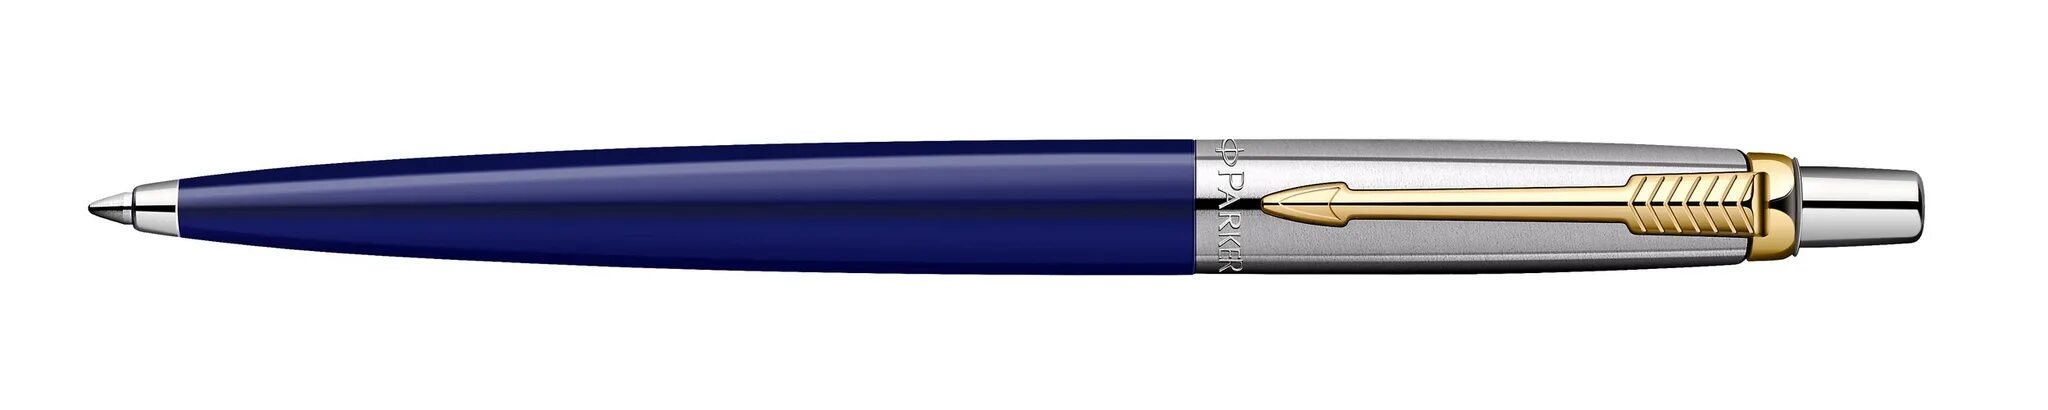 Ручка шариковая Parker Jotter Blue r0033170. Ручка шариковая Parker Jotter Original k60. Паркер Джоттер. Parker Jotter Black k60. Шариковые ручки оригинал